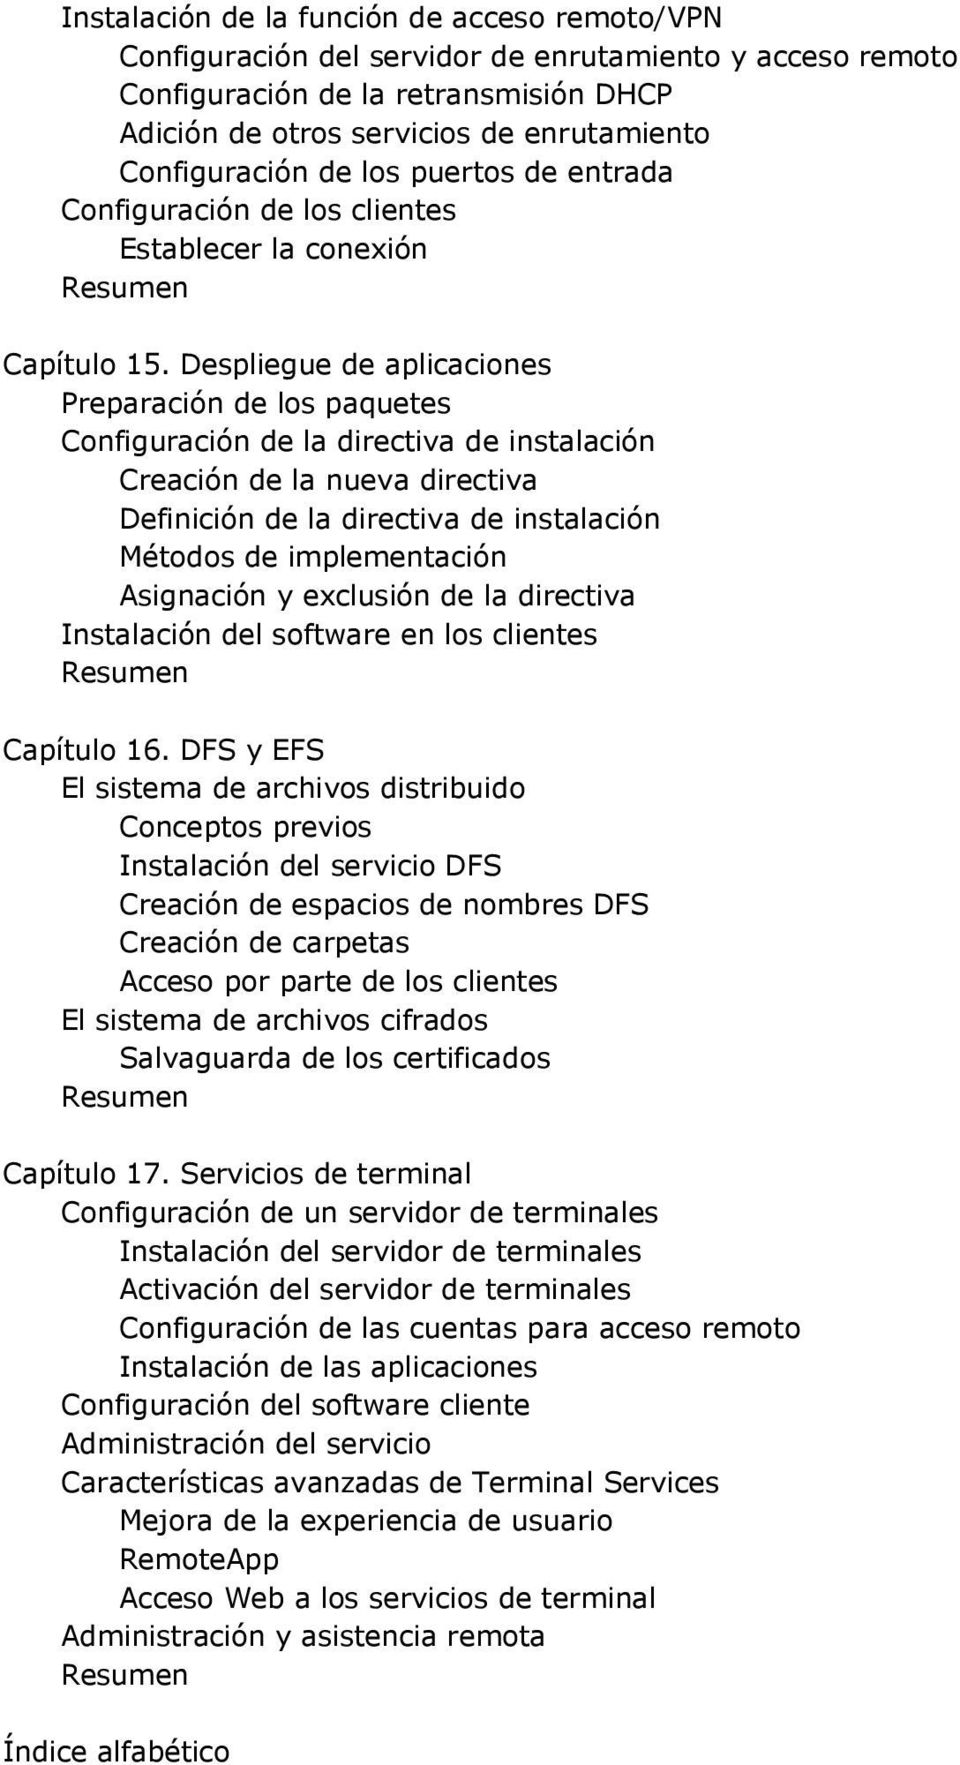 Despliegue de aplicaciones Preparación de los paquetes Configuración de la directiva de instalación Creación de la nueva directiva Definición de la directiva de instalación Métodos de implementación